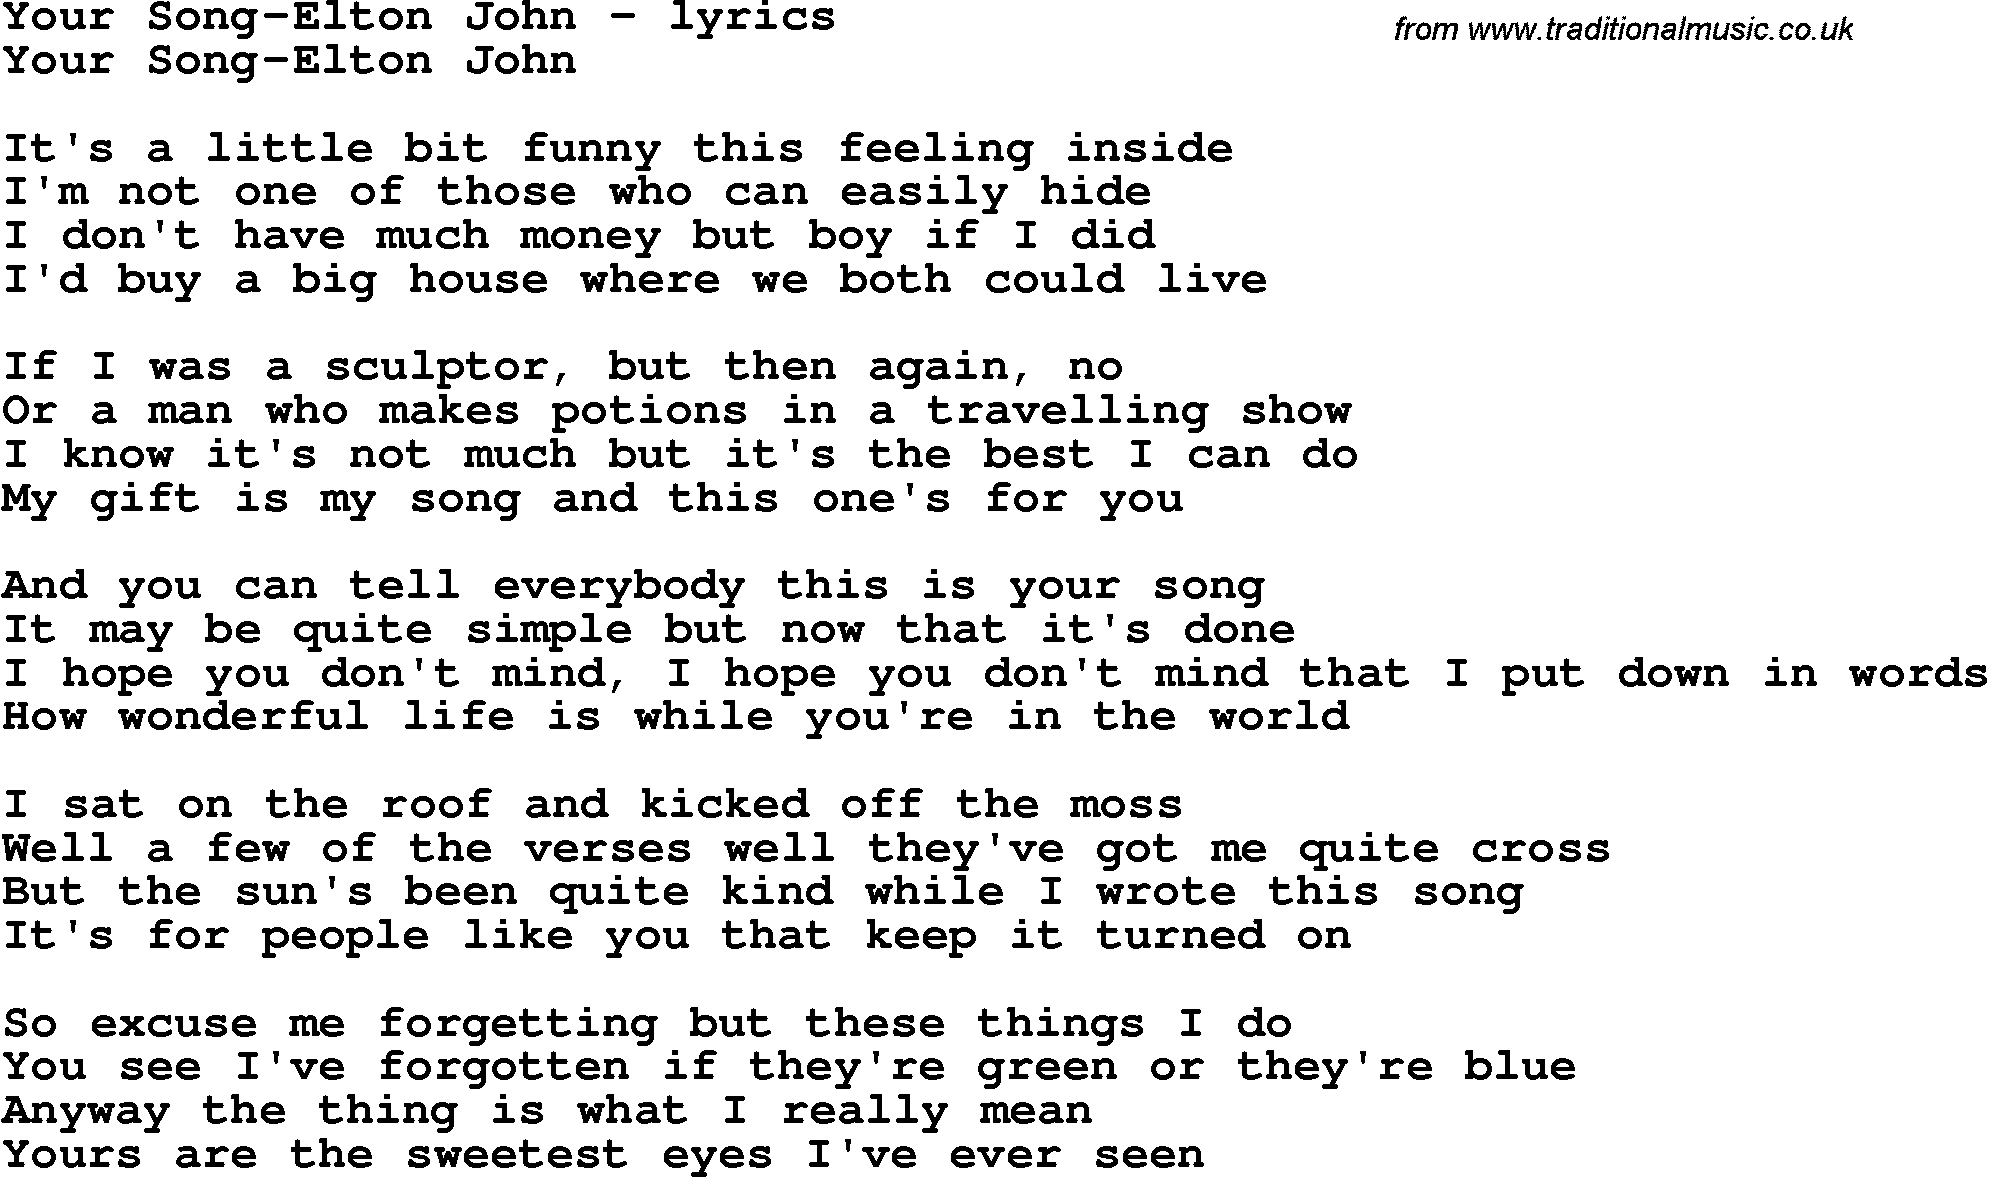 Love Song Lyrics For:your Song-Elton John - Free Printable Song Lyrics, Sou...